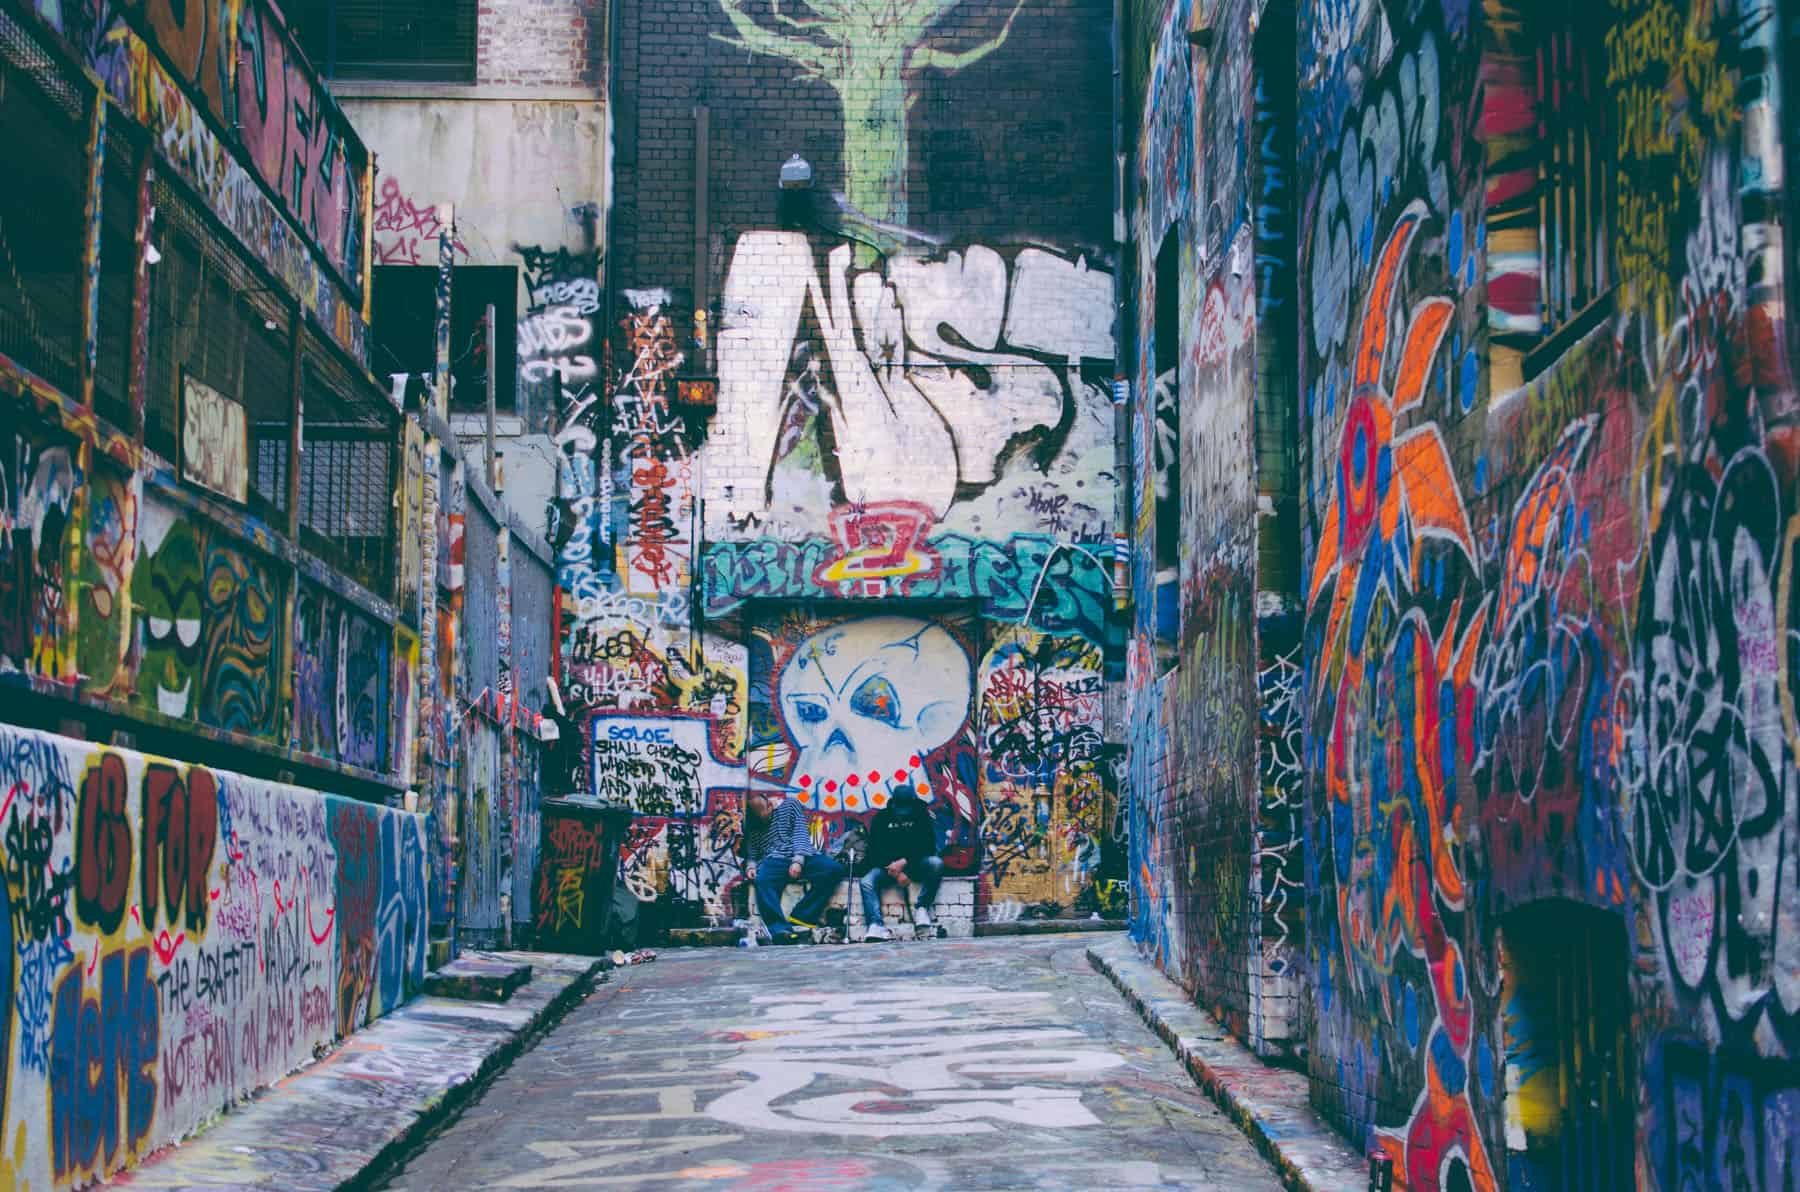 street art wallpaper,art,alley,wall,mural,urban area